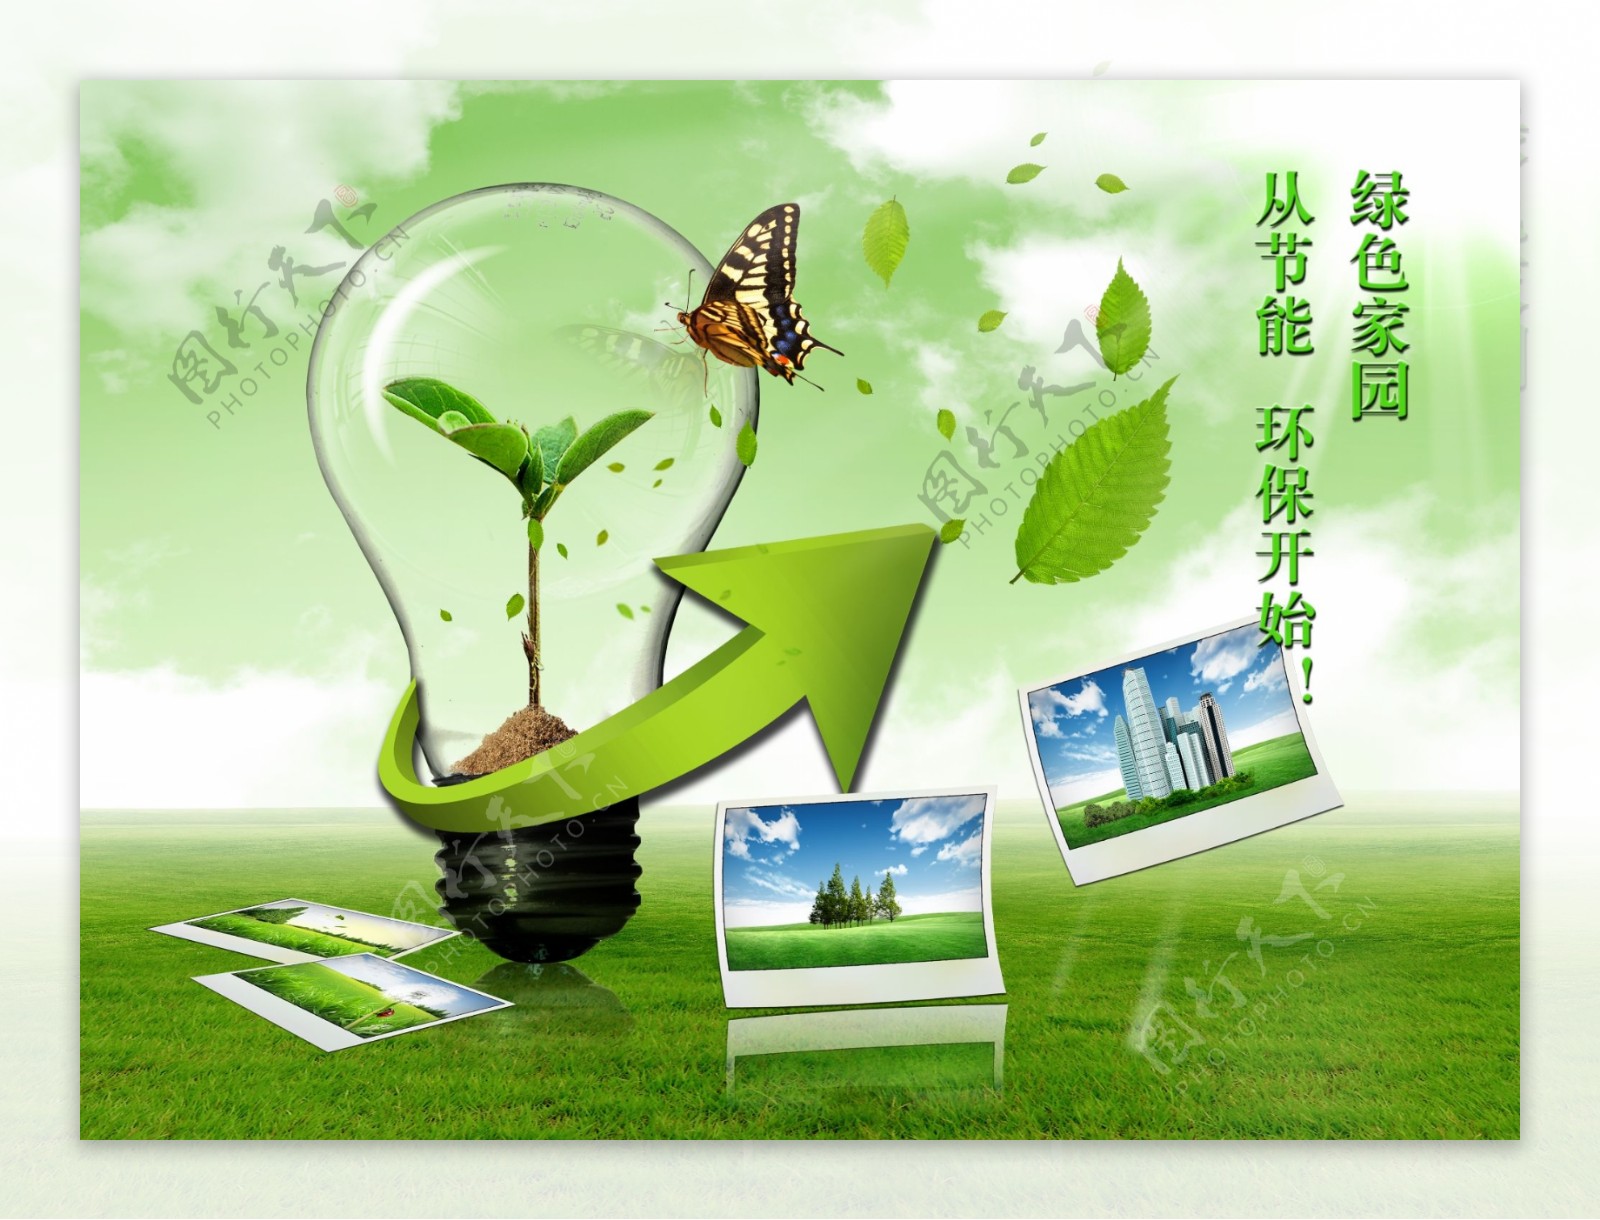 公益绿色创意灯泡广告PSD素材